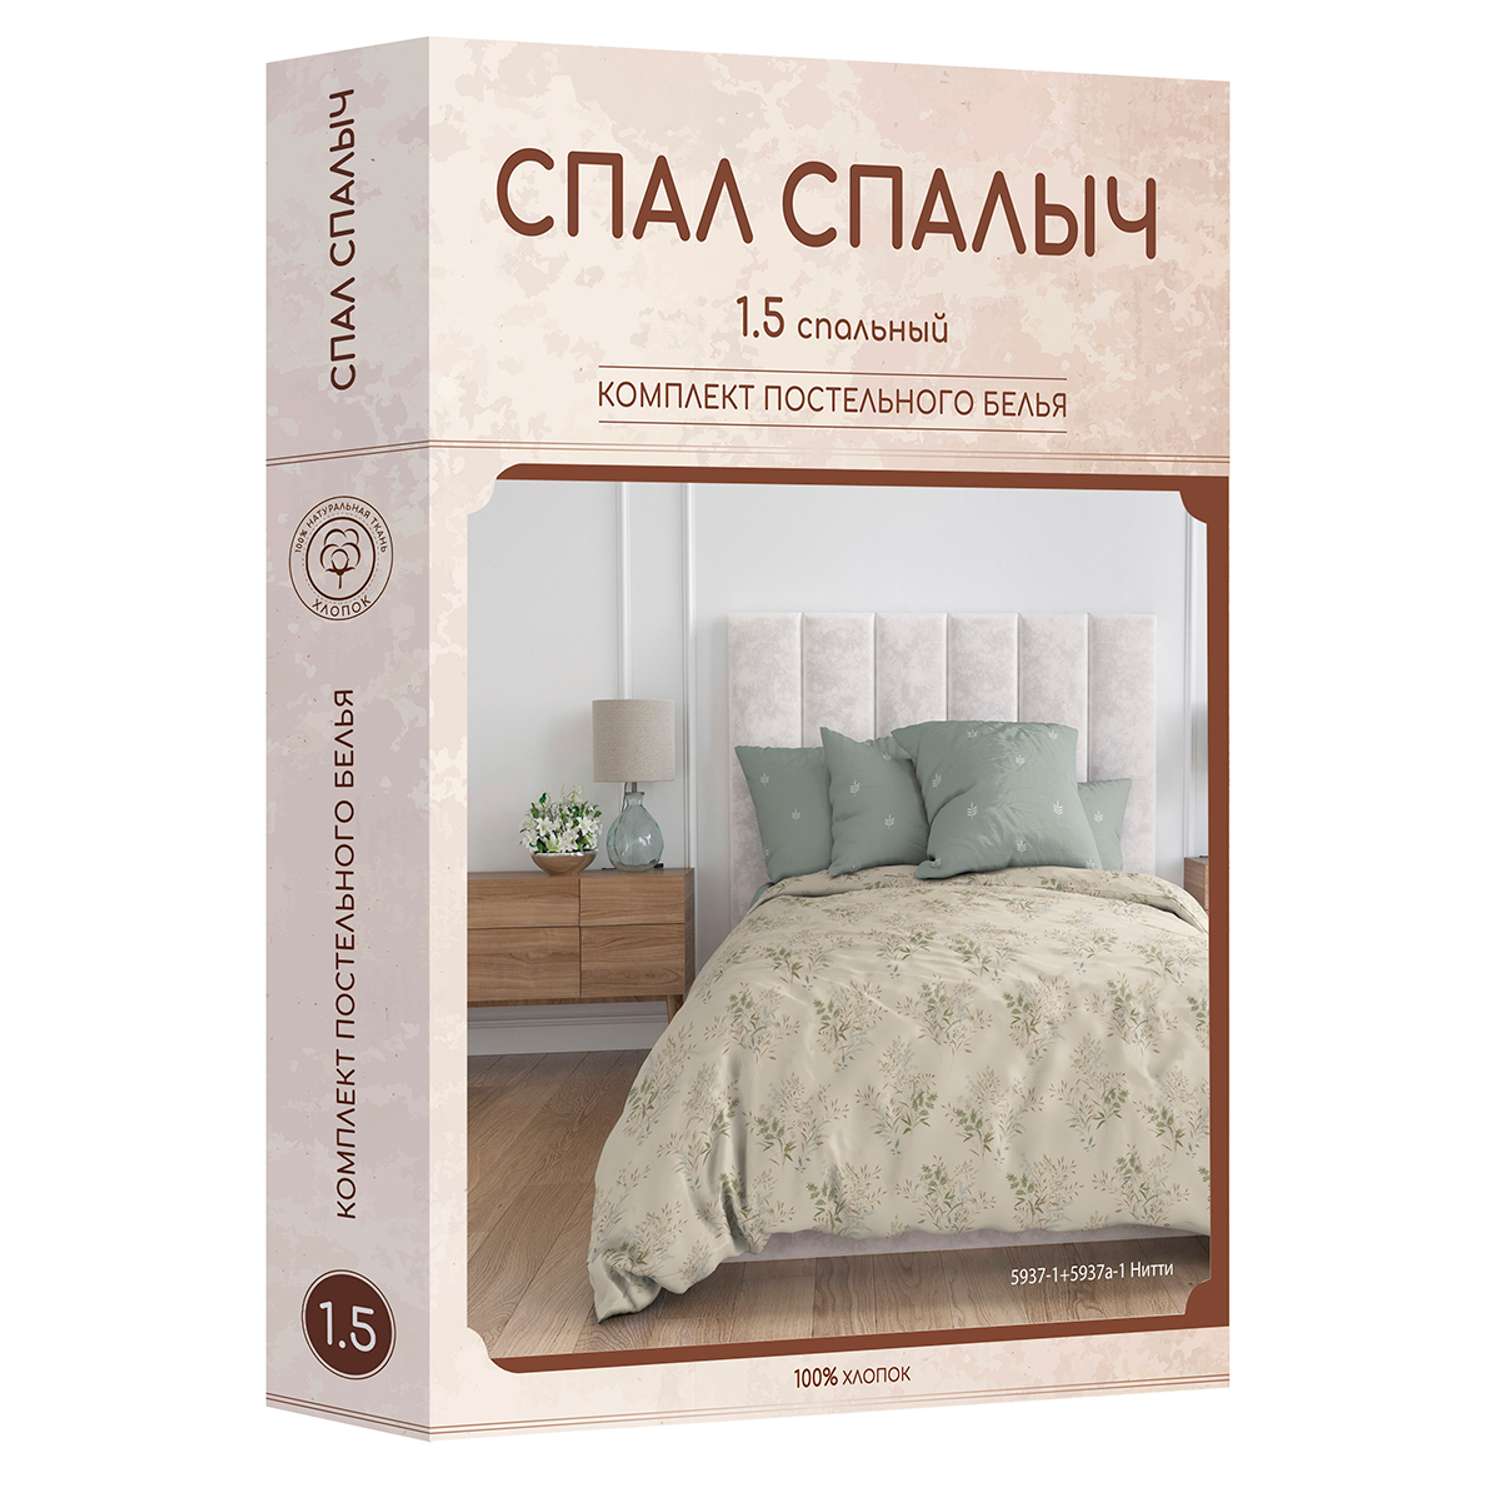 Комплект постельного белья Спал Спалыч Нитти 1.5-спальный - фото 9